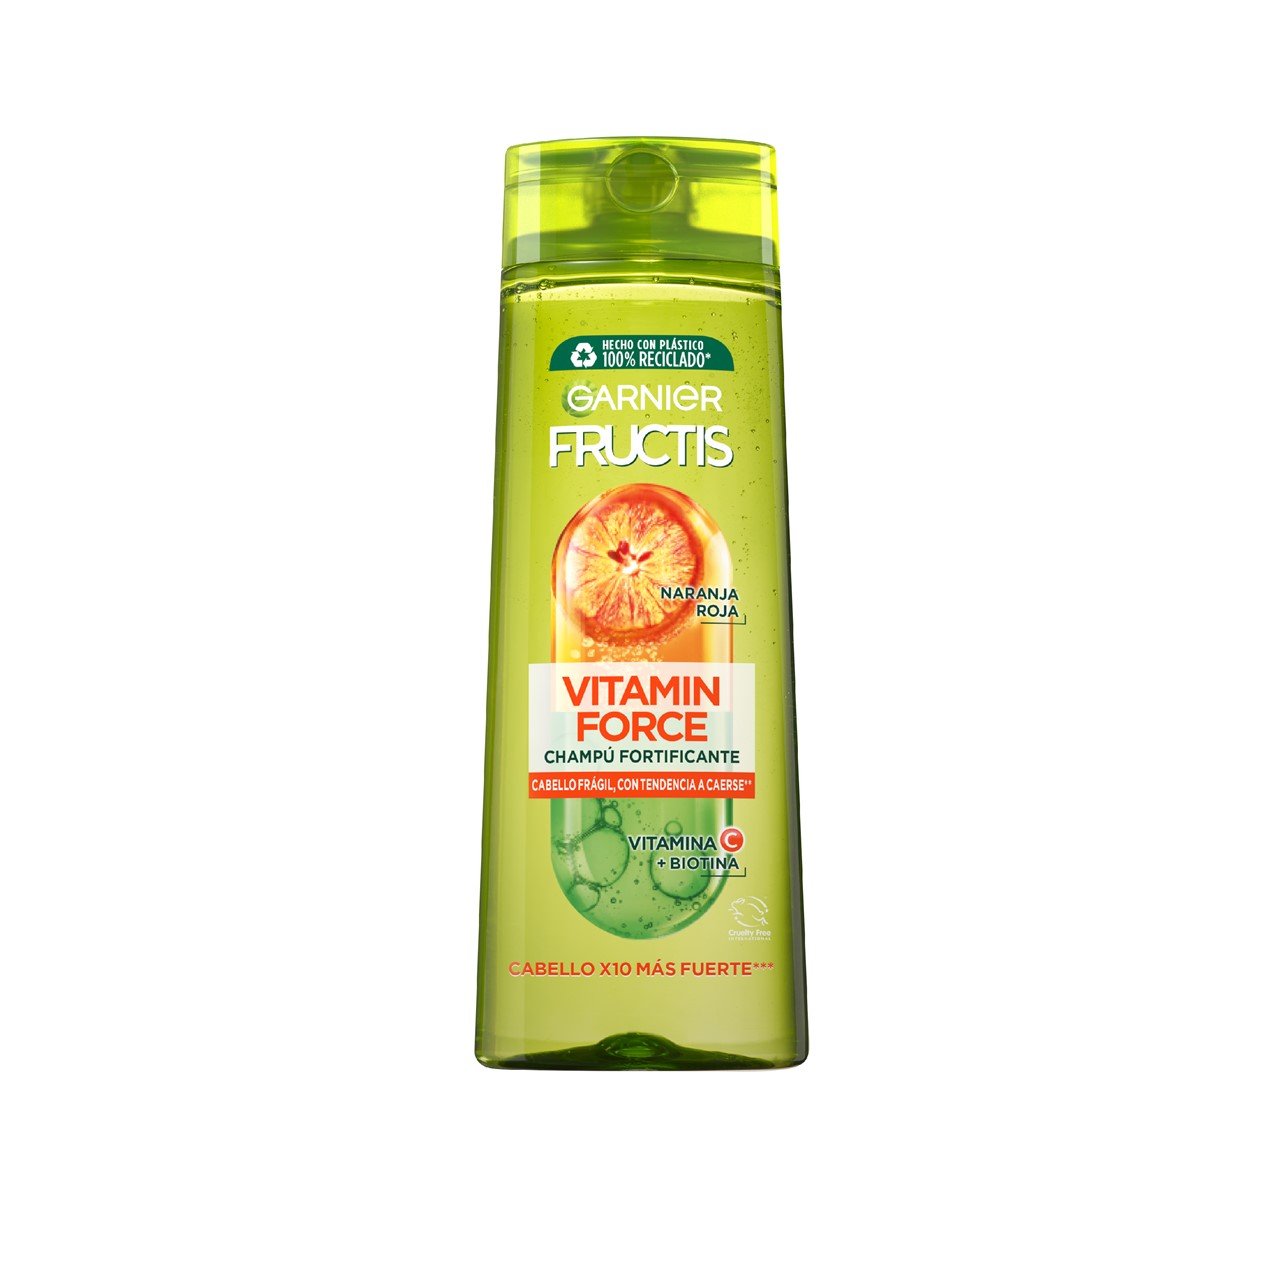 Garnier Fructis Vitamin Force Fortifying Shampoo 400ml (13.53fl oz)